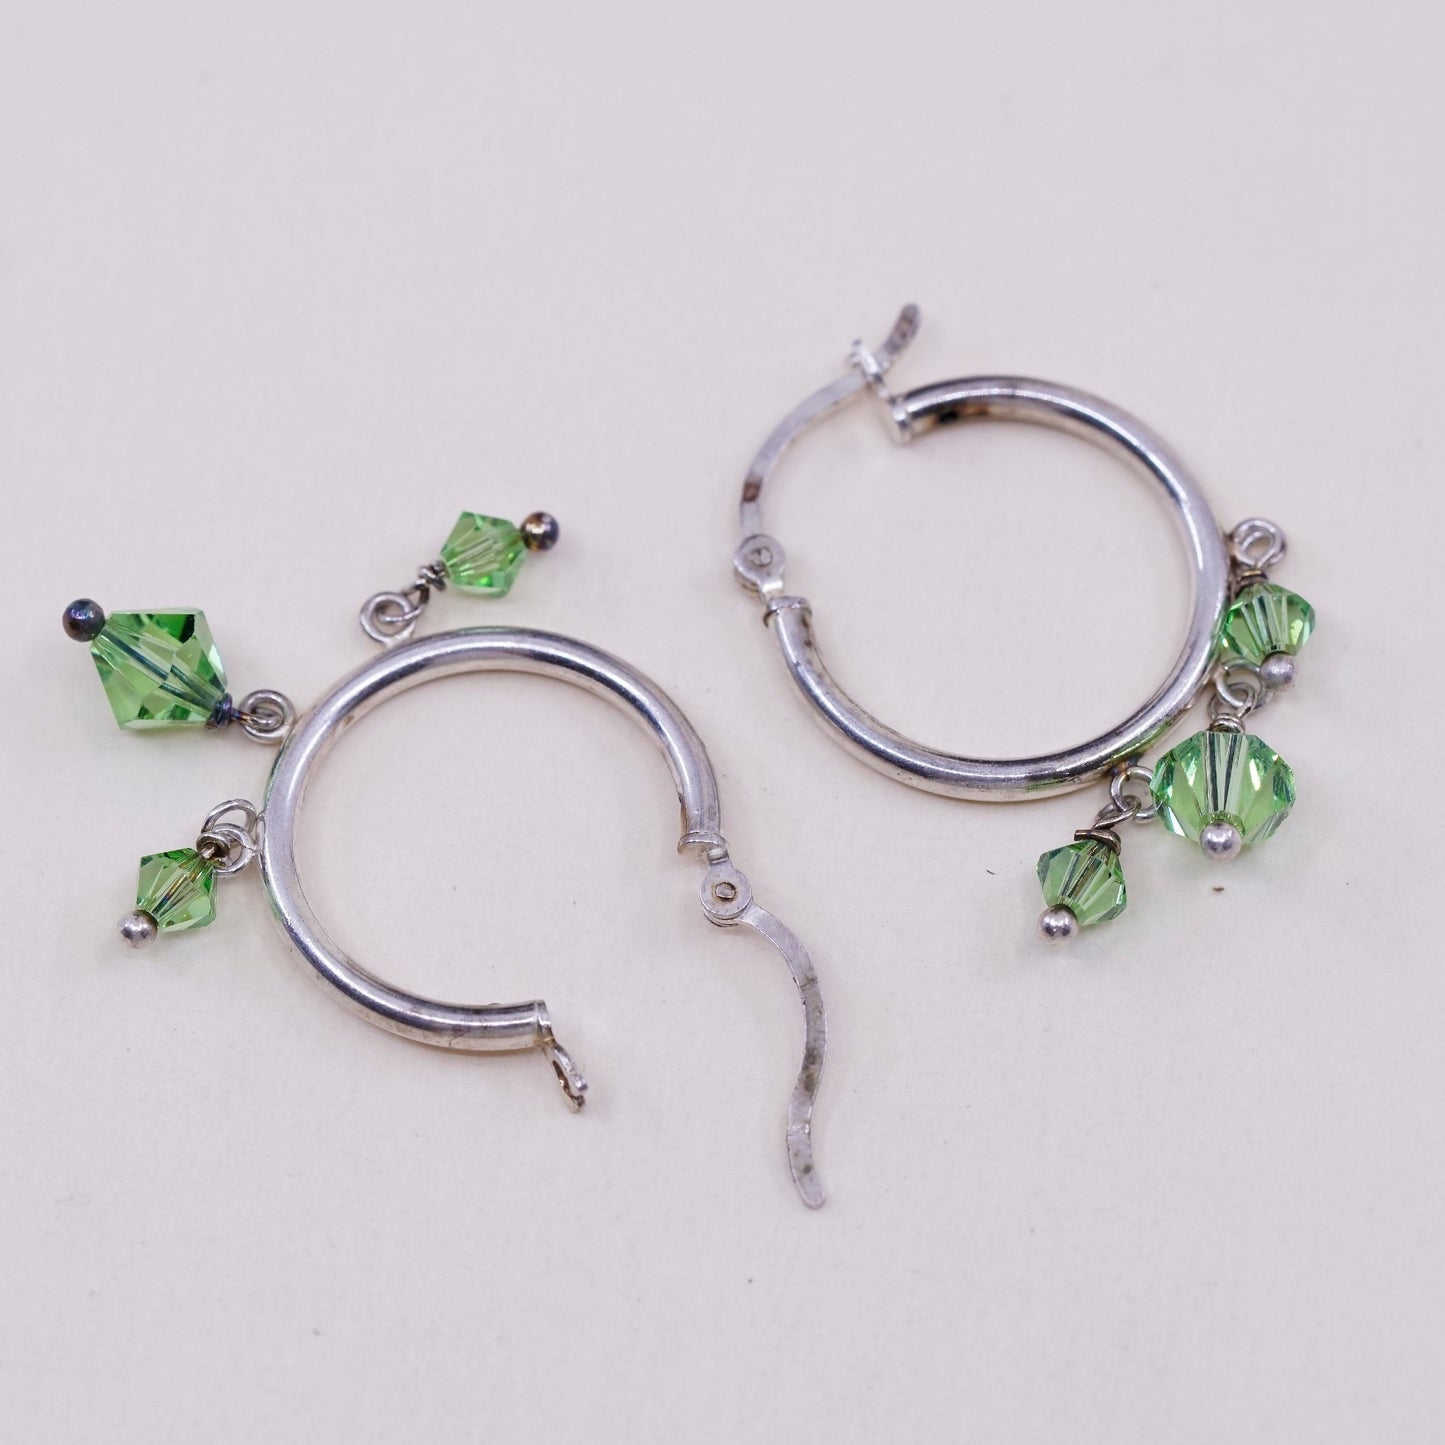 0.75”, Vintage sterling silver loop earrings, primitive hoops with peridot